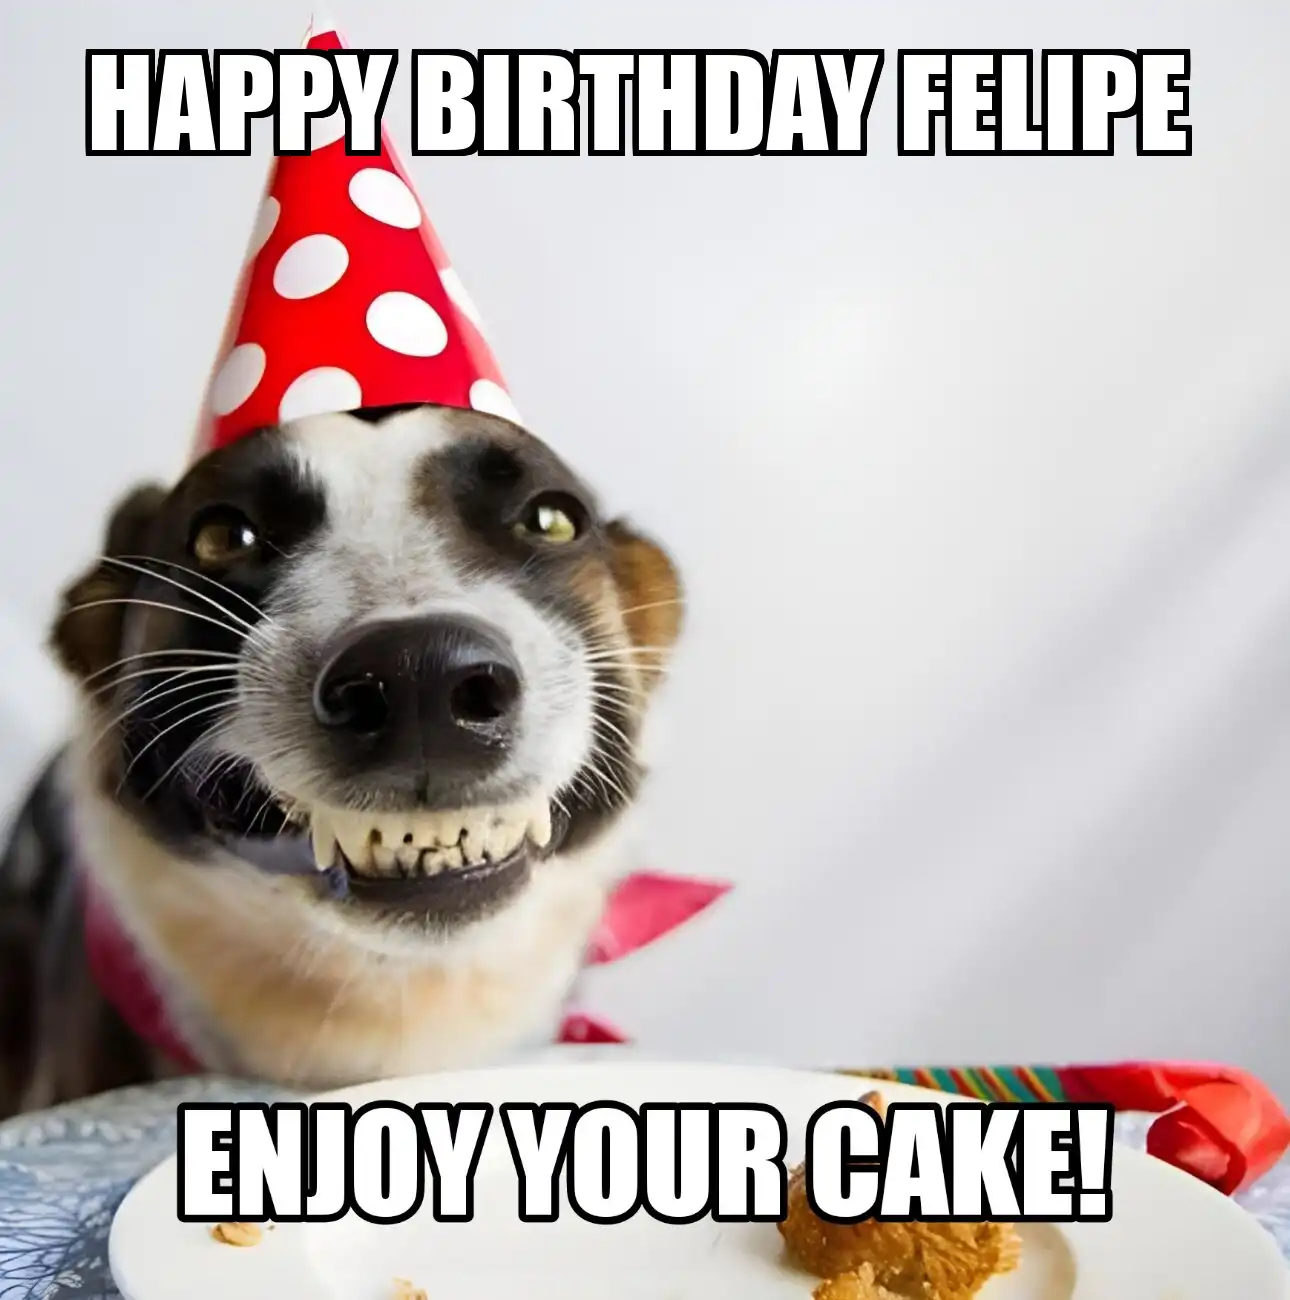 Happy Birthday Felipe Enjoy Your Cake Dog Meme